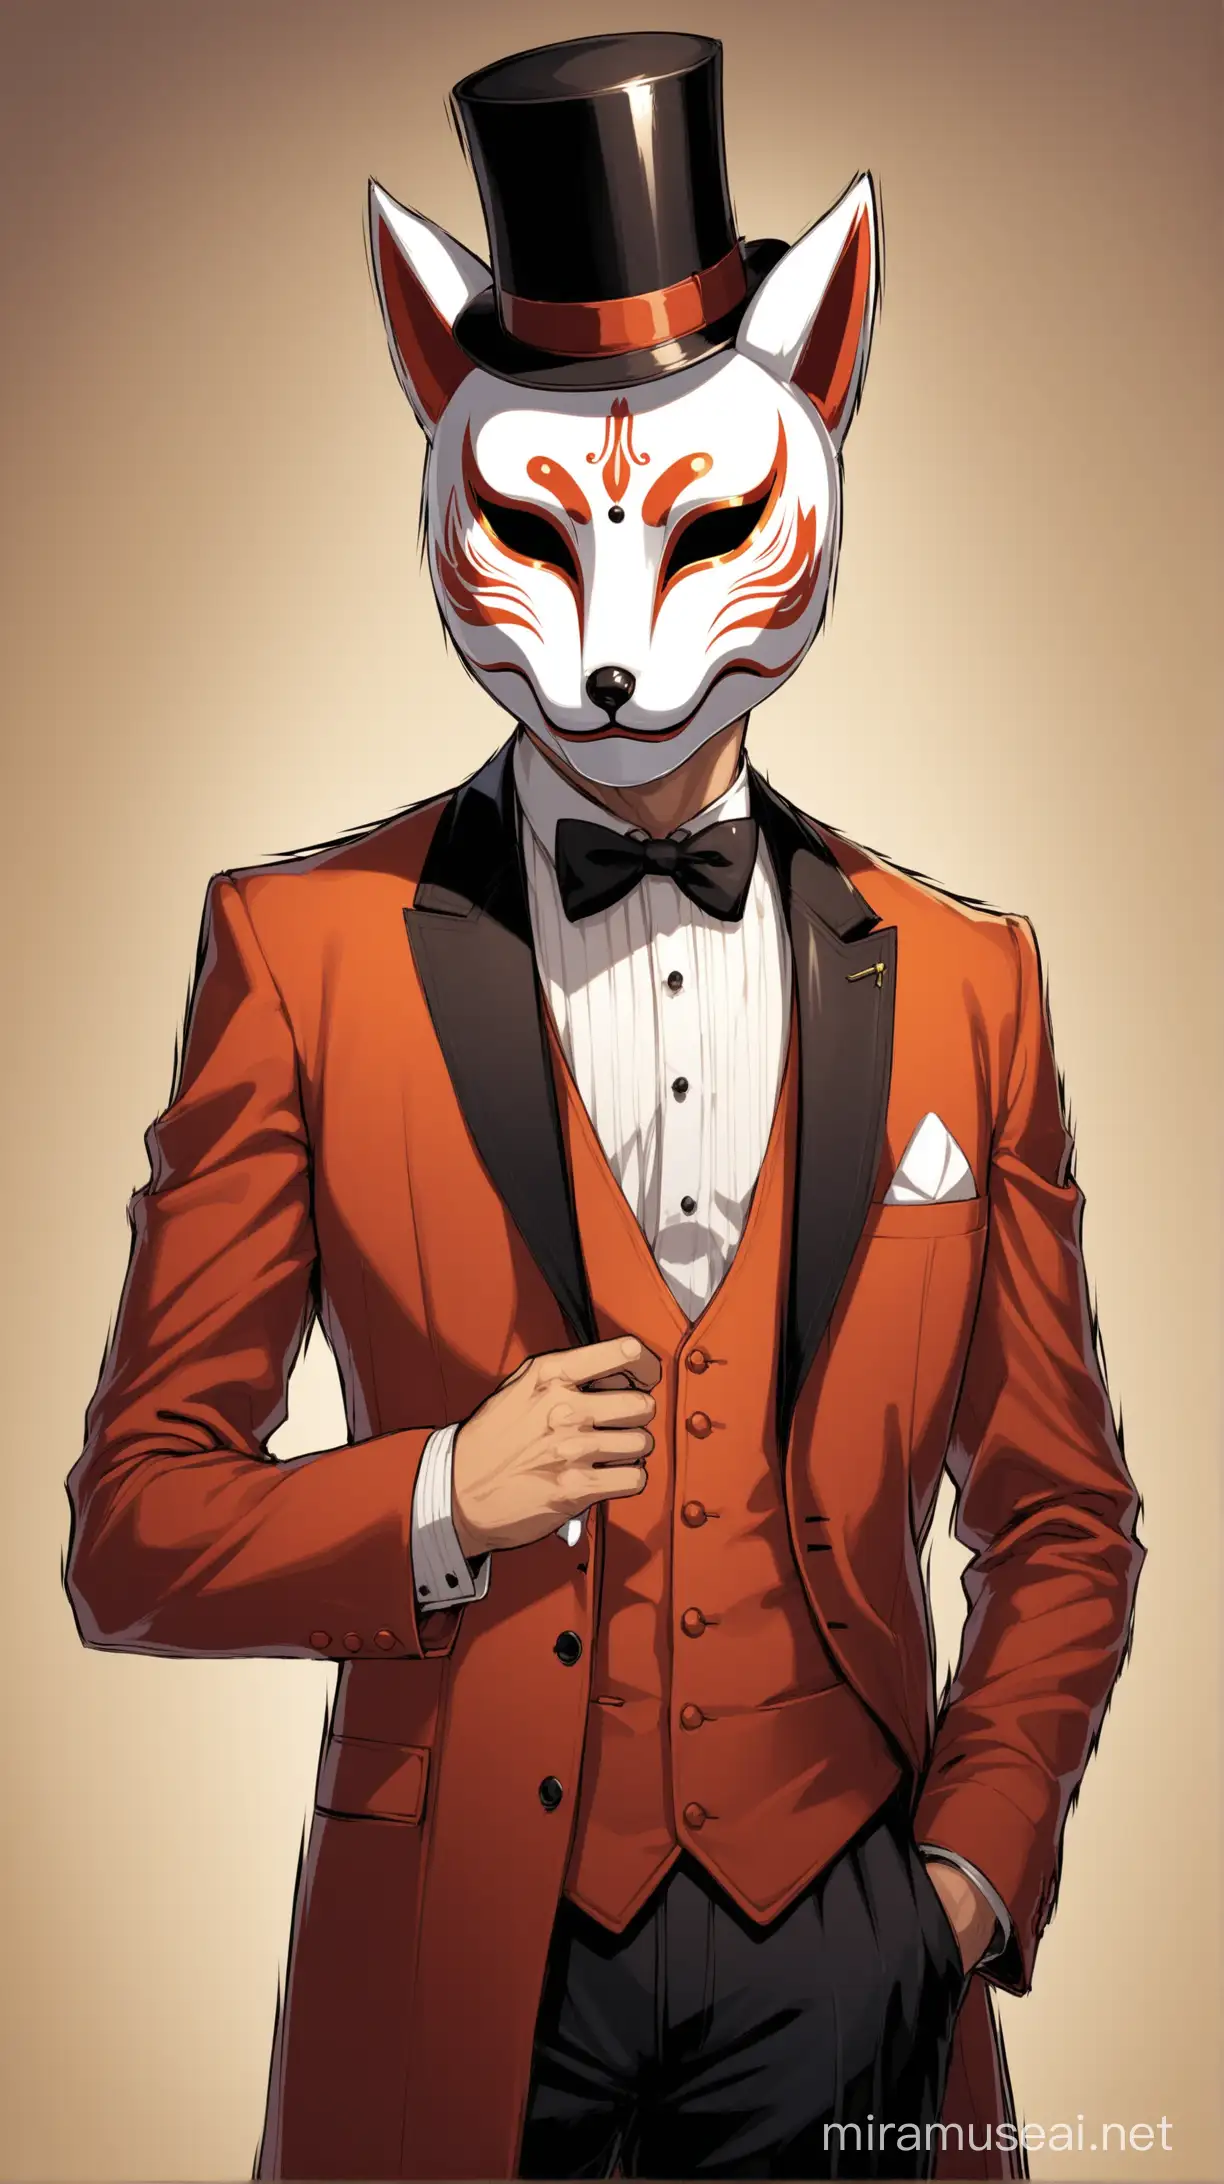 Gentleman, fox mask, Utopic era